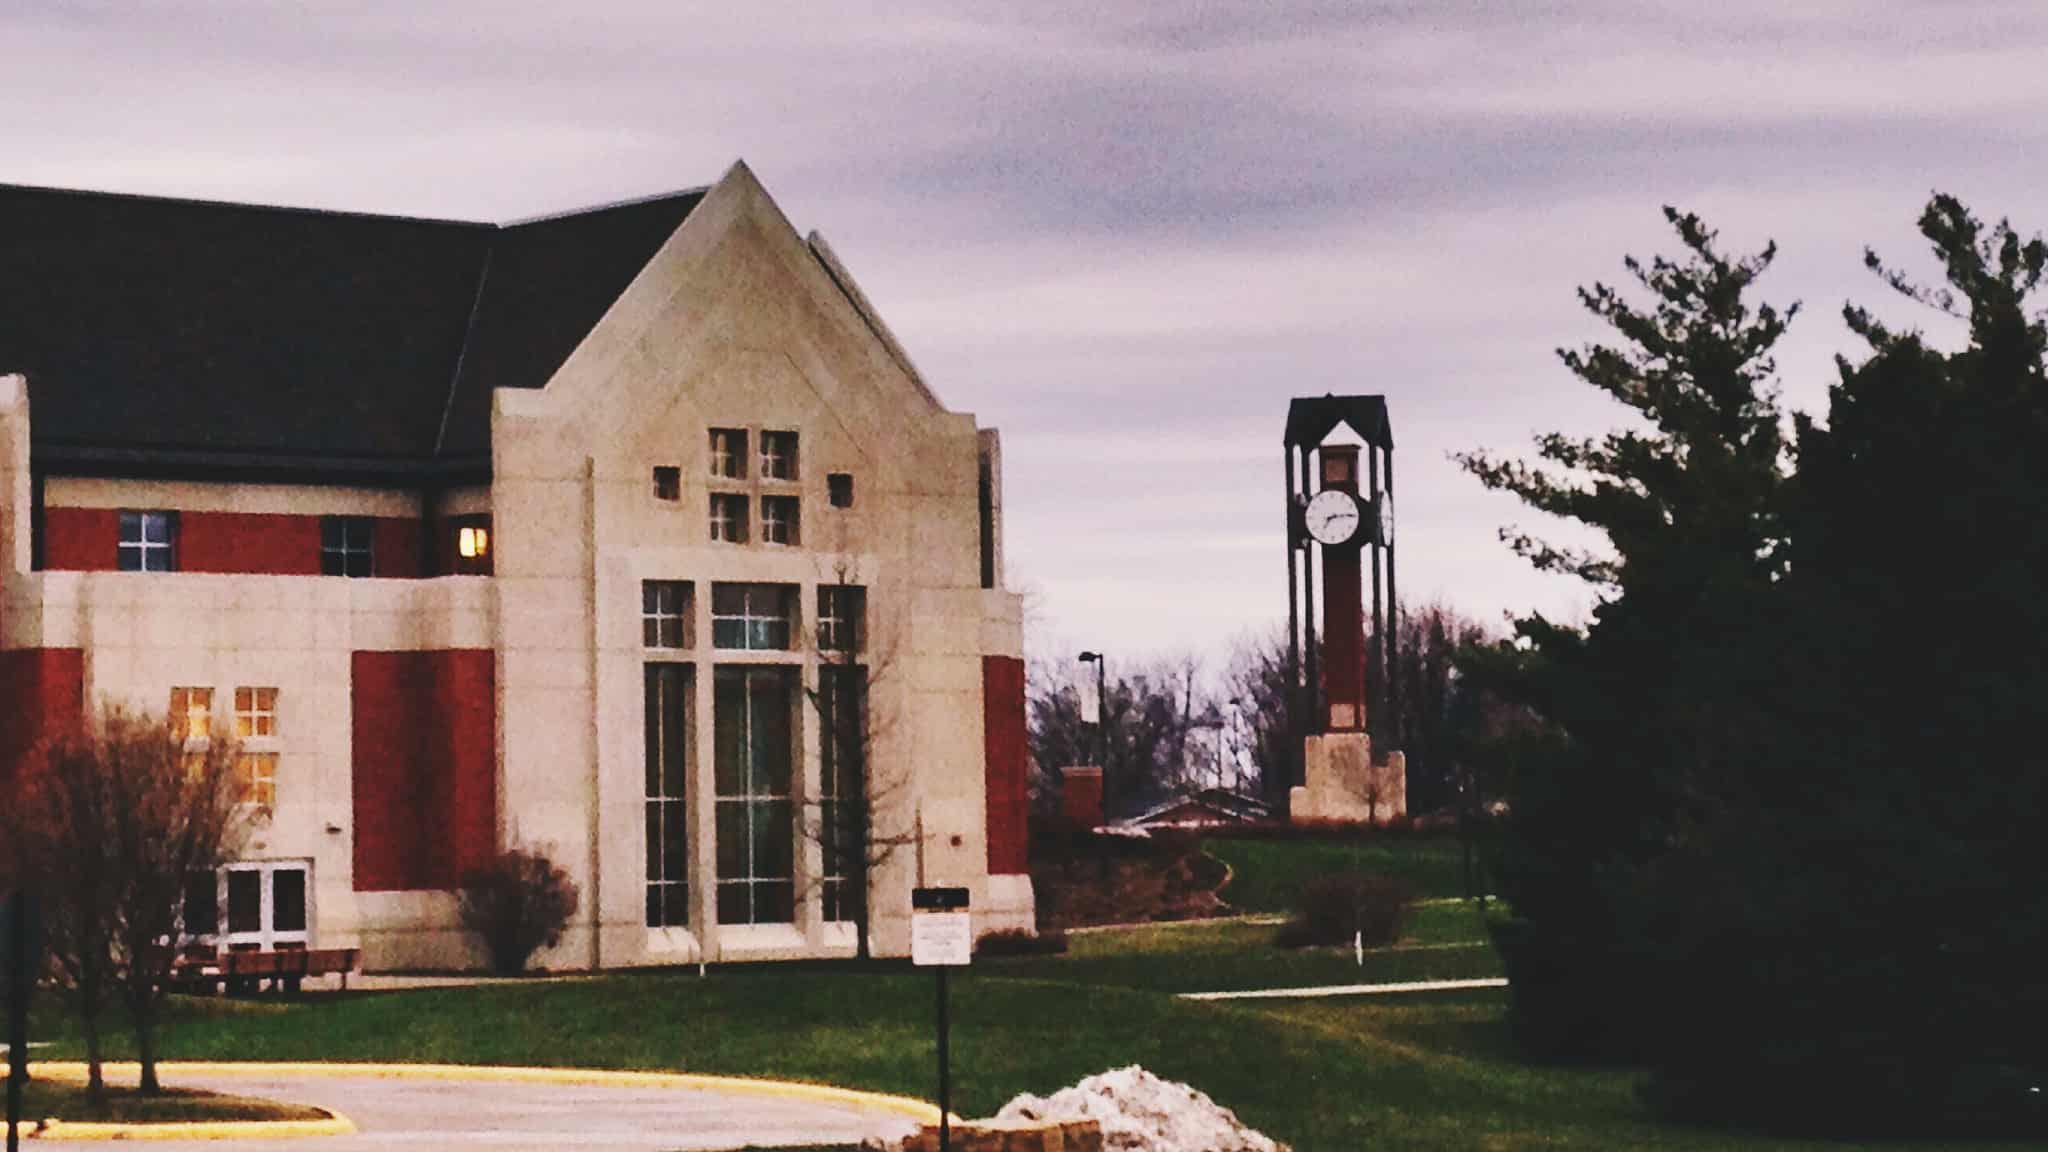 Dordt College in Sioux Center, Iowa